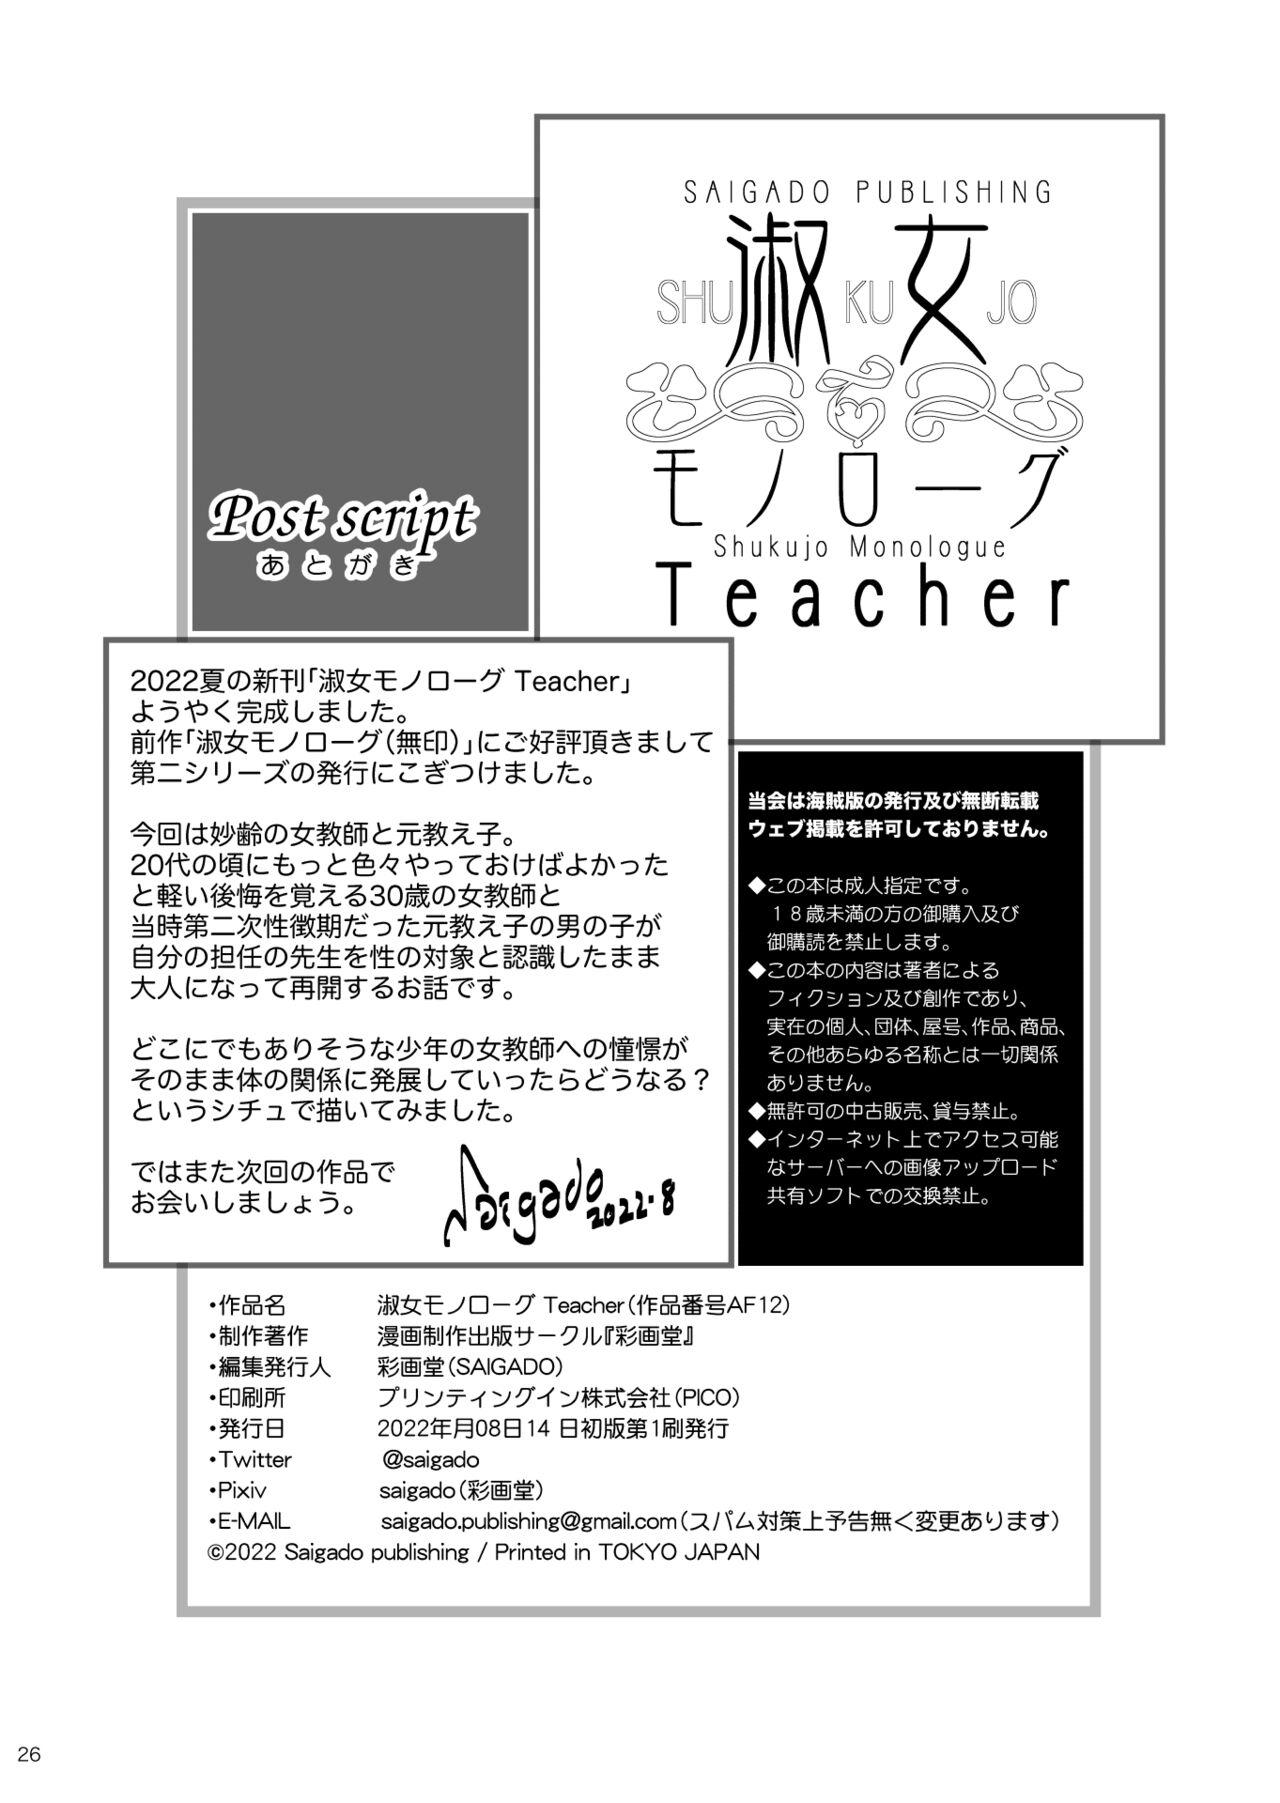 Shukujo Monologue Teacher 24